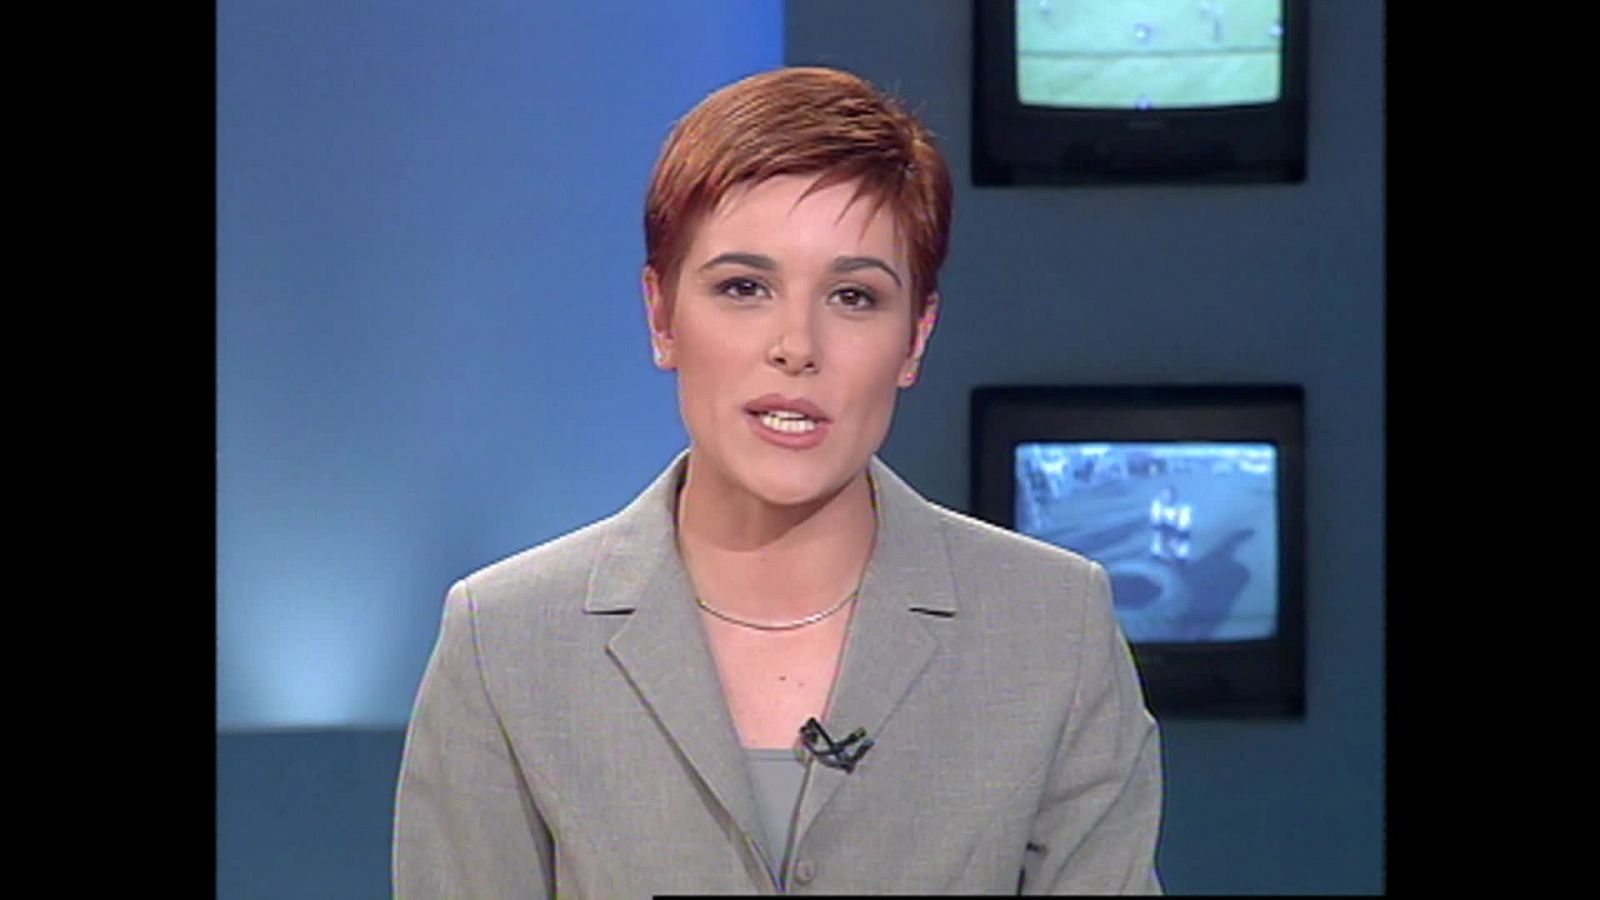 Raquel Sánchez Silva y sus inicios en televisión: así comenzó su carrera en TVE como presentadora de deportes